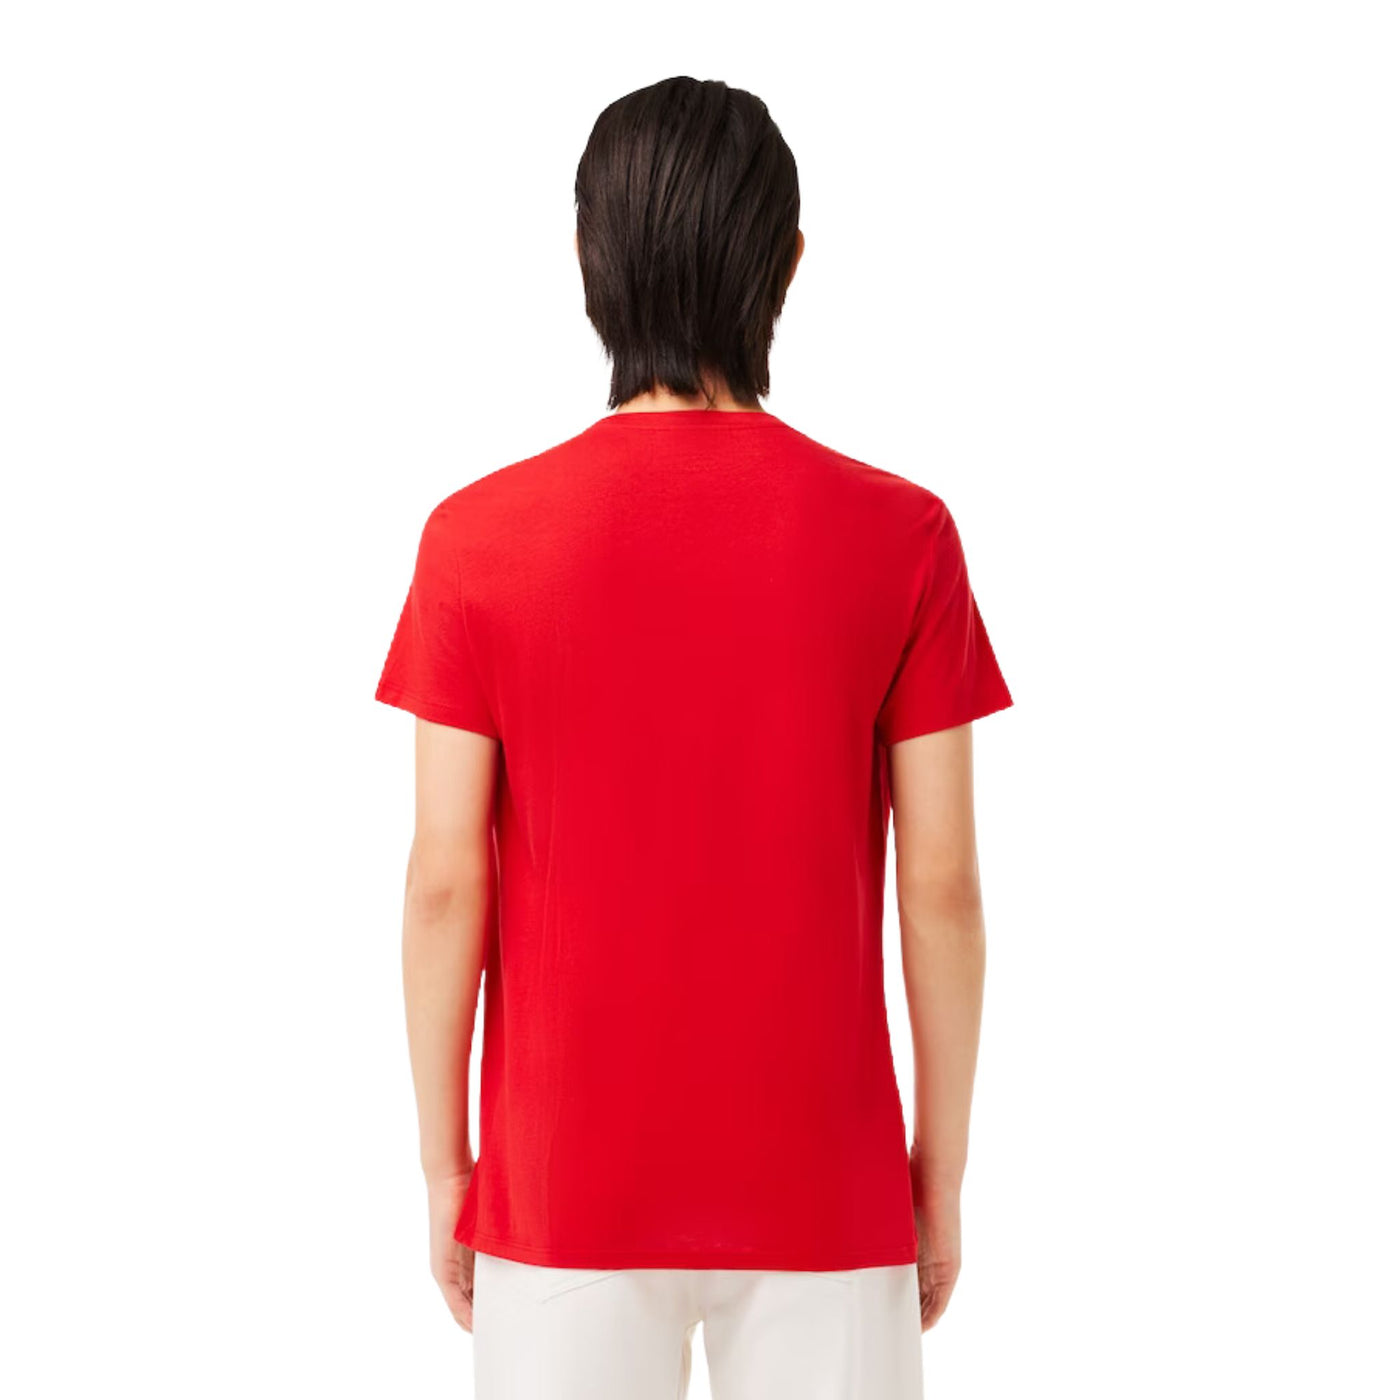 Retro modello con T-shirt in jersey di cotone Pima con logo ricamato sul petto